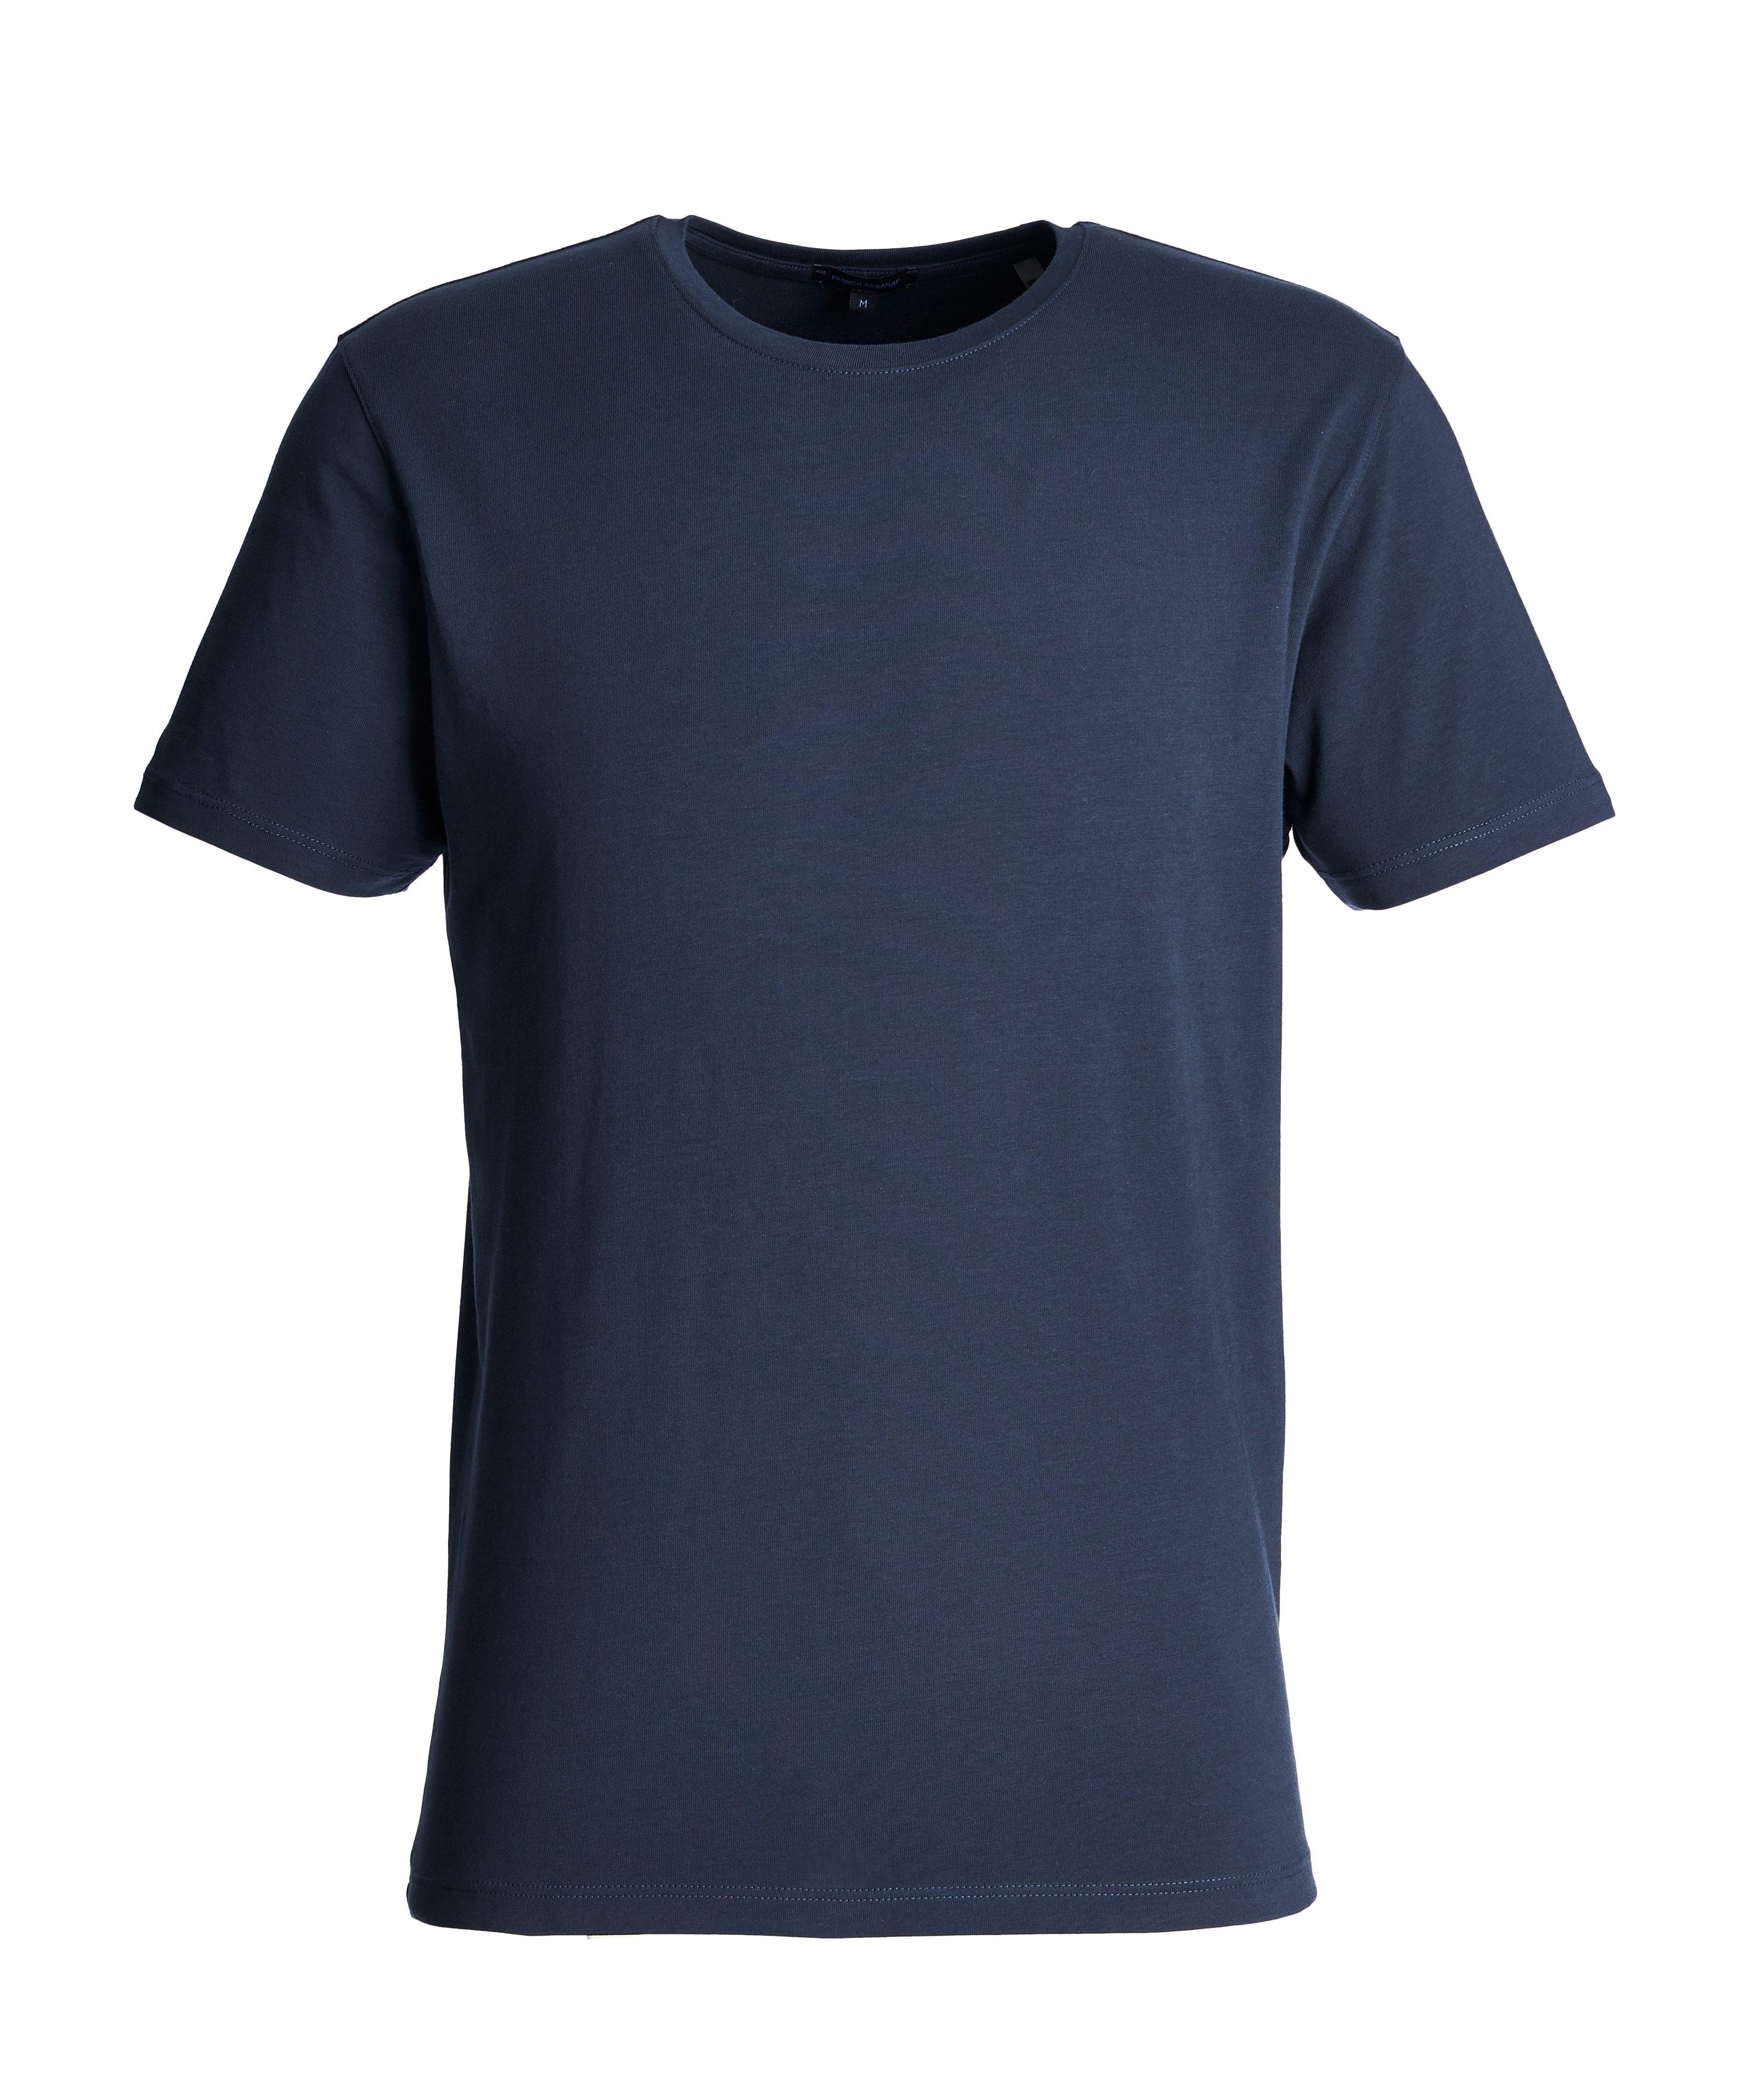 T-shirt en coton extensible image 0